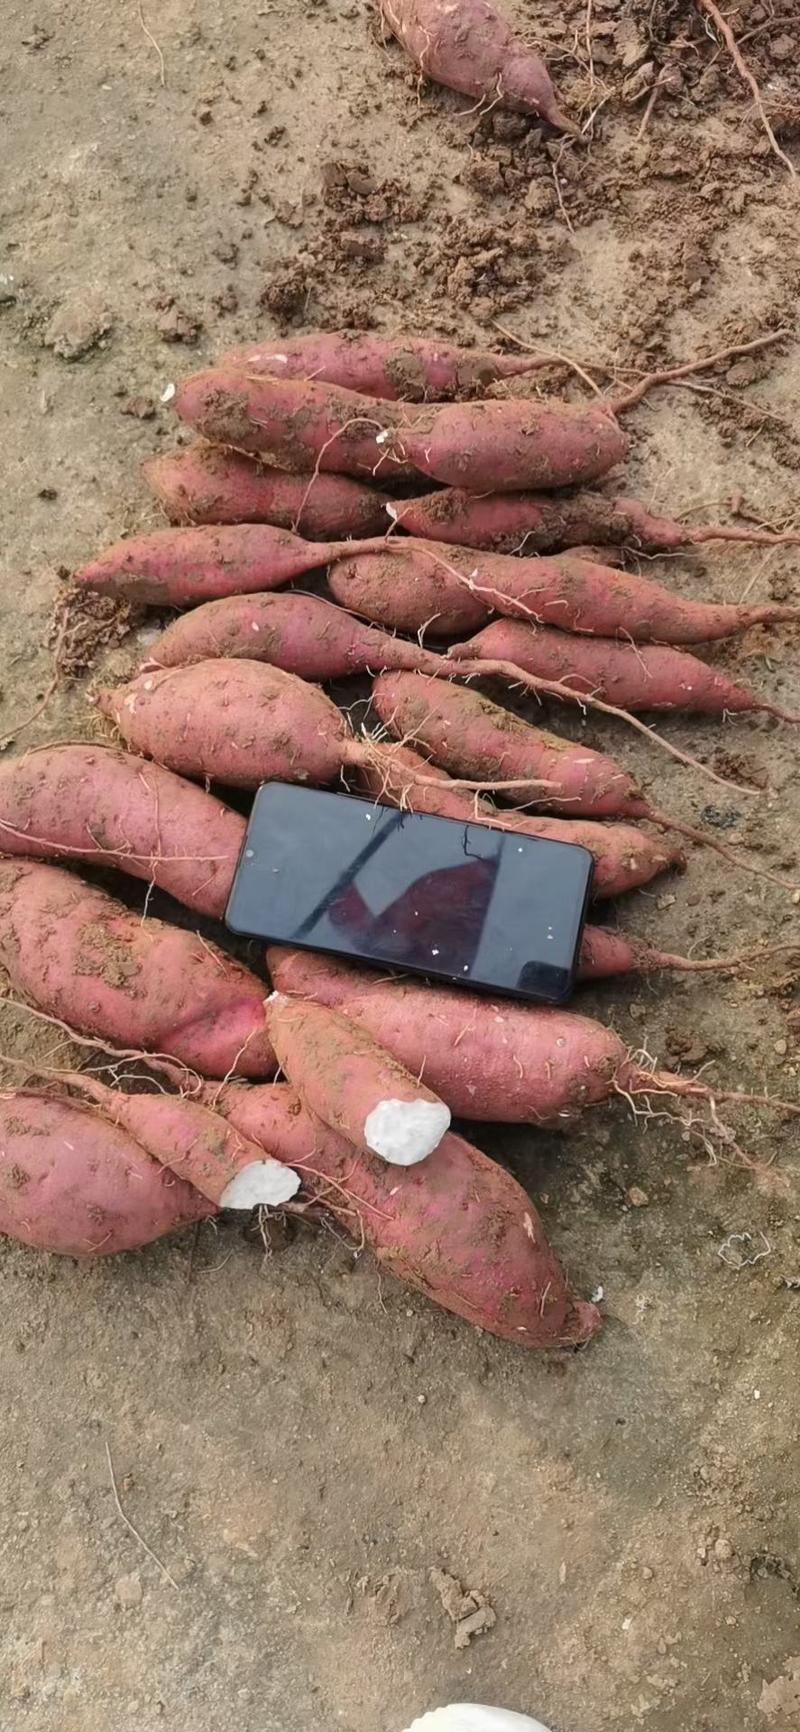 红薯种苗品种齐全:脱毒商薯十九、济薯二五、西瓜红